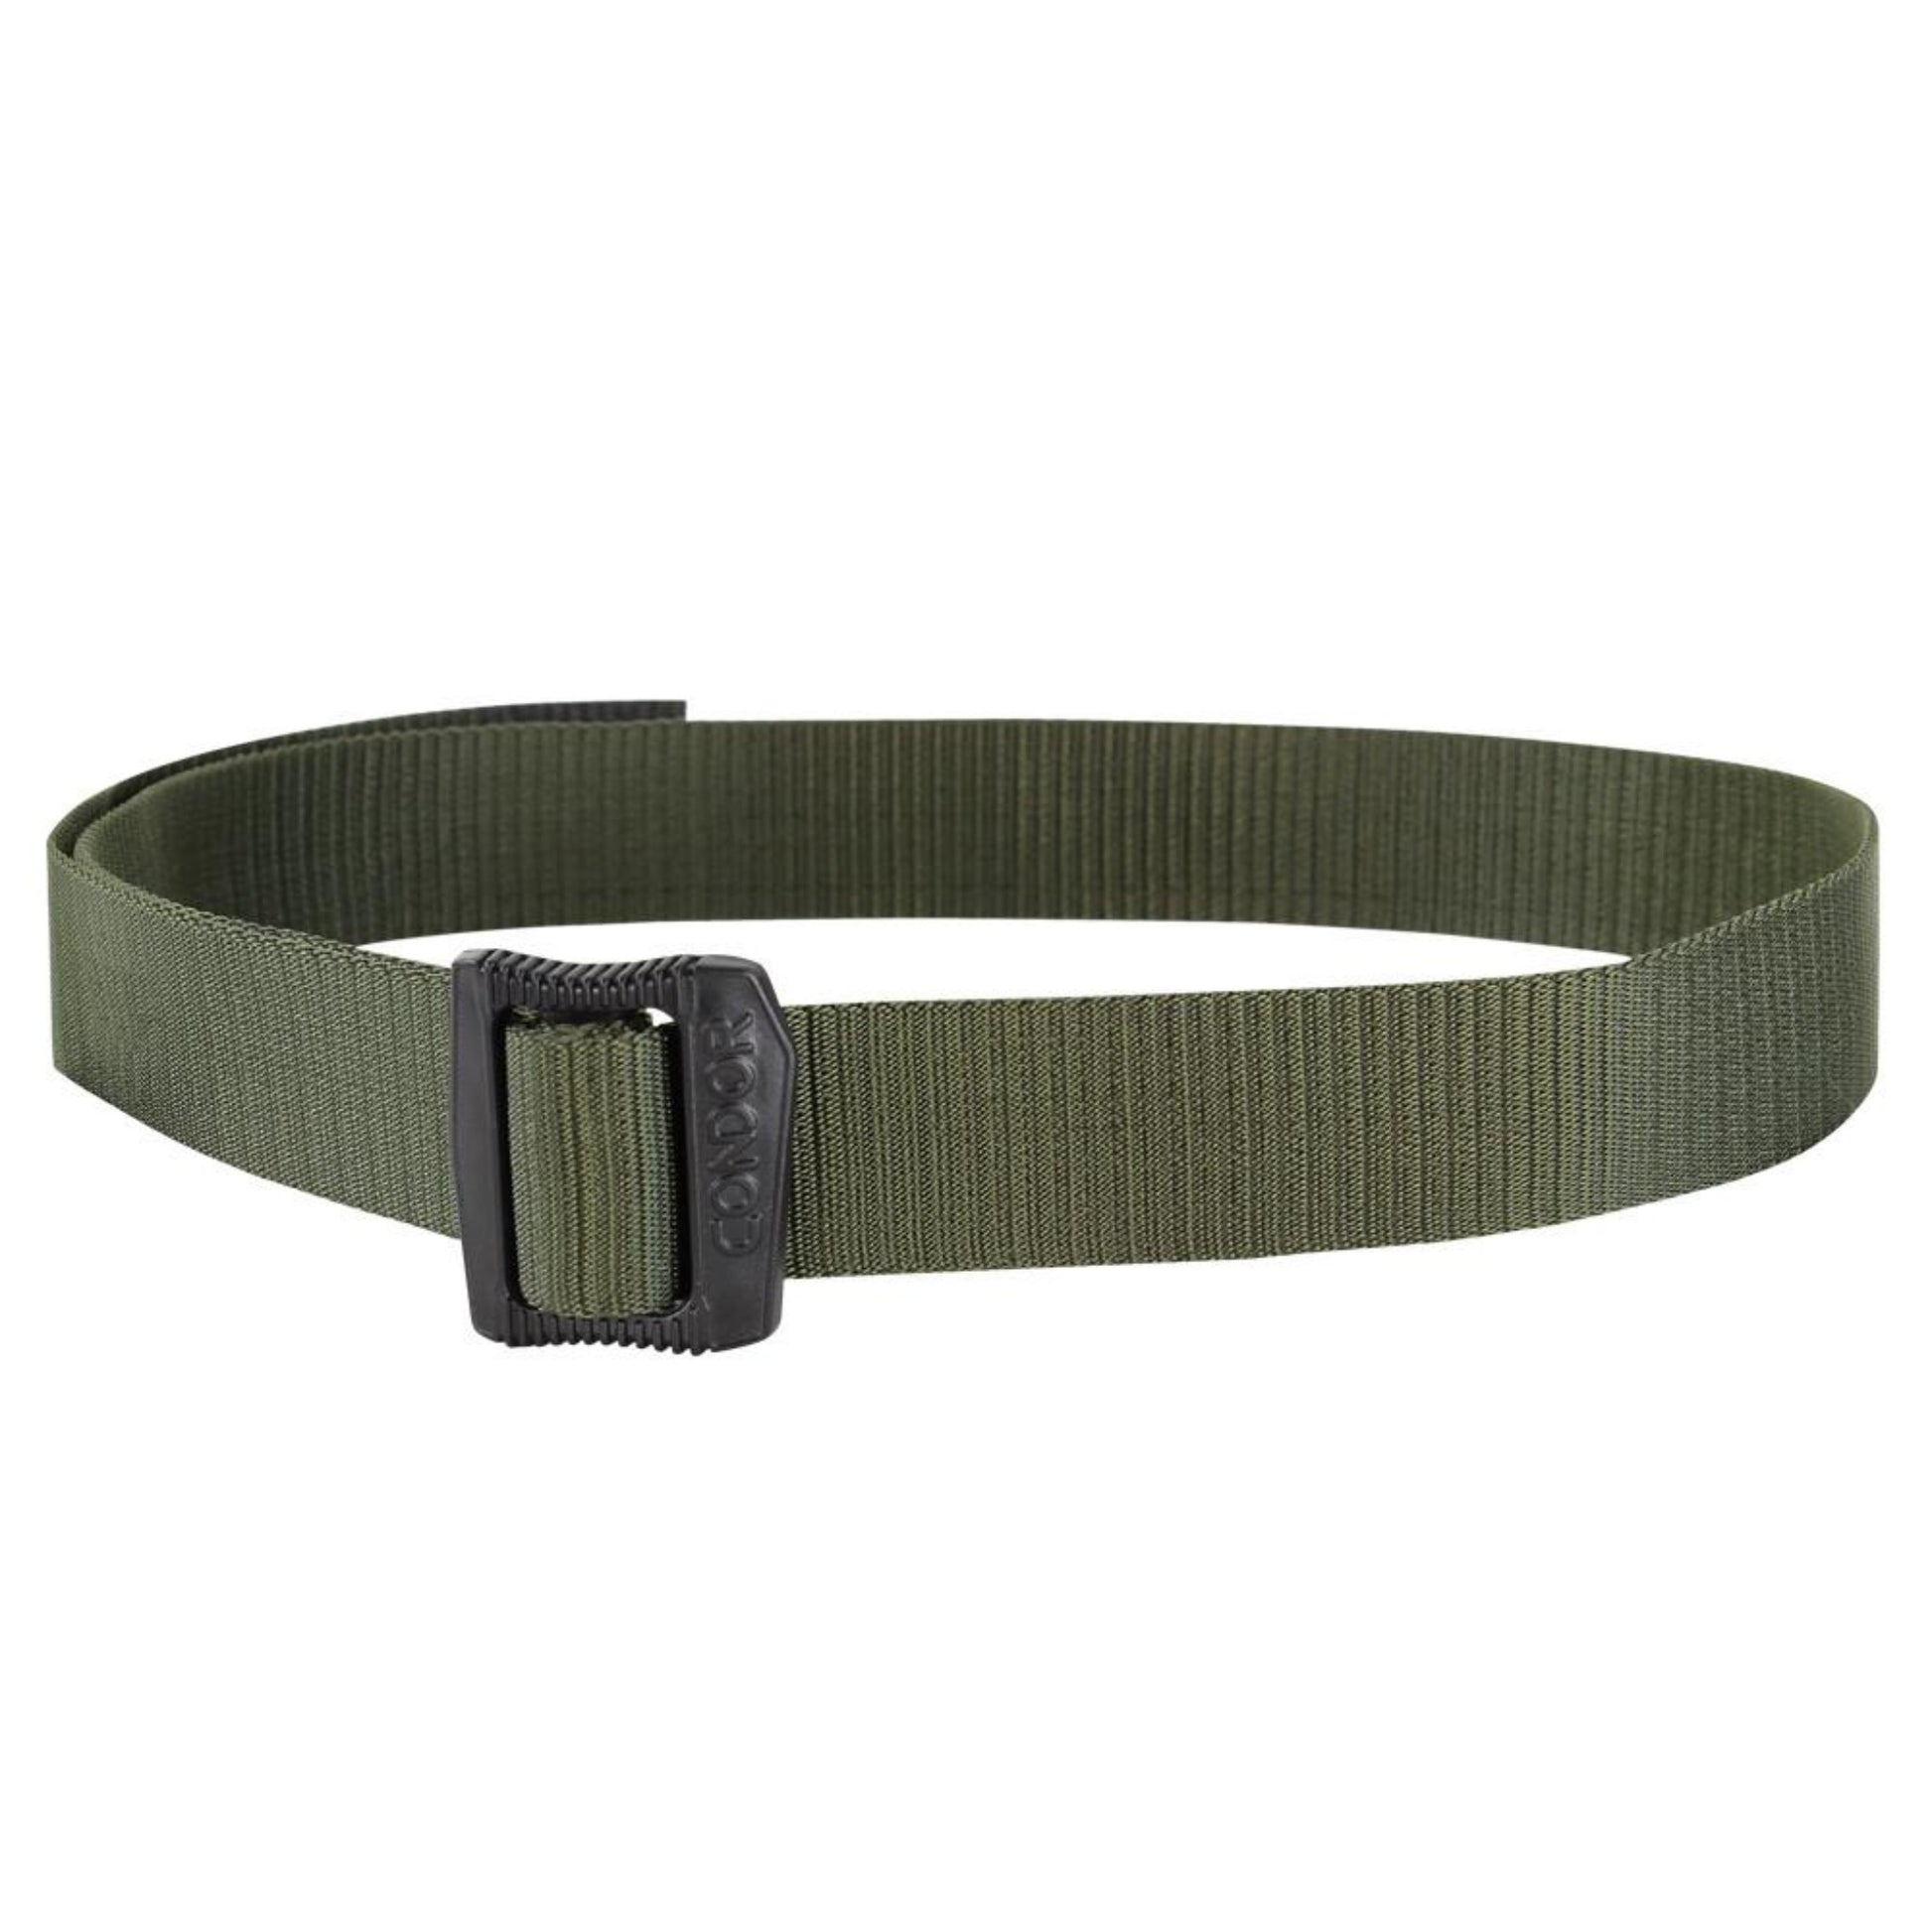 Dark Green BDU Belt From Condoor Outdoor